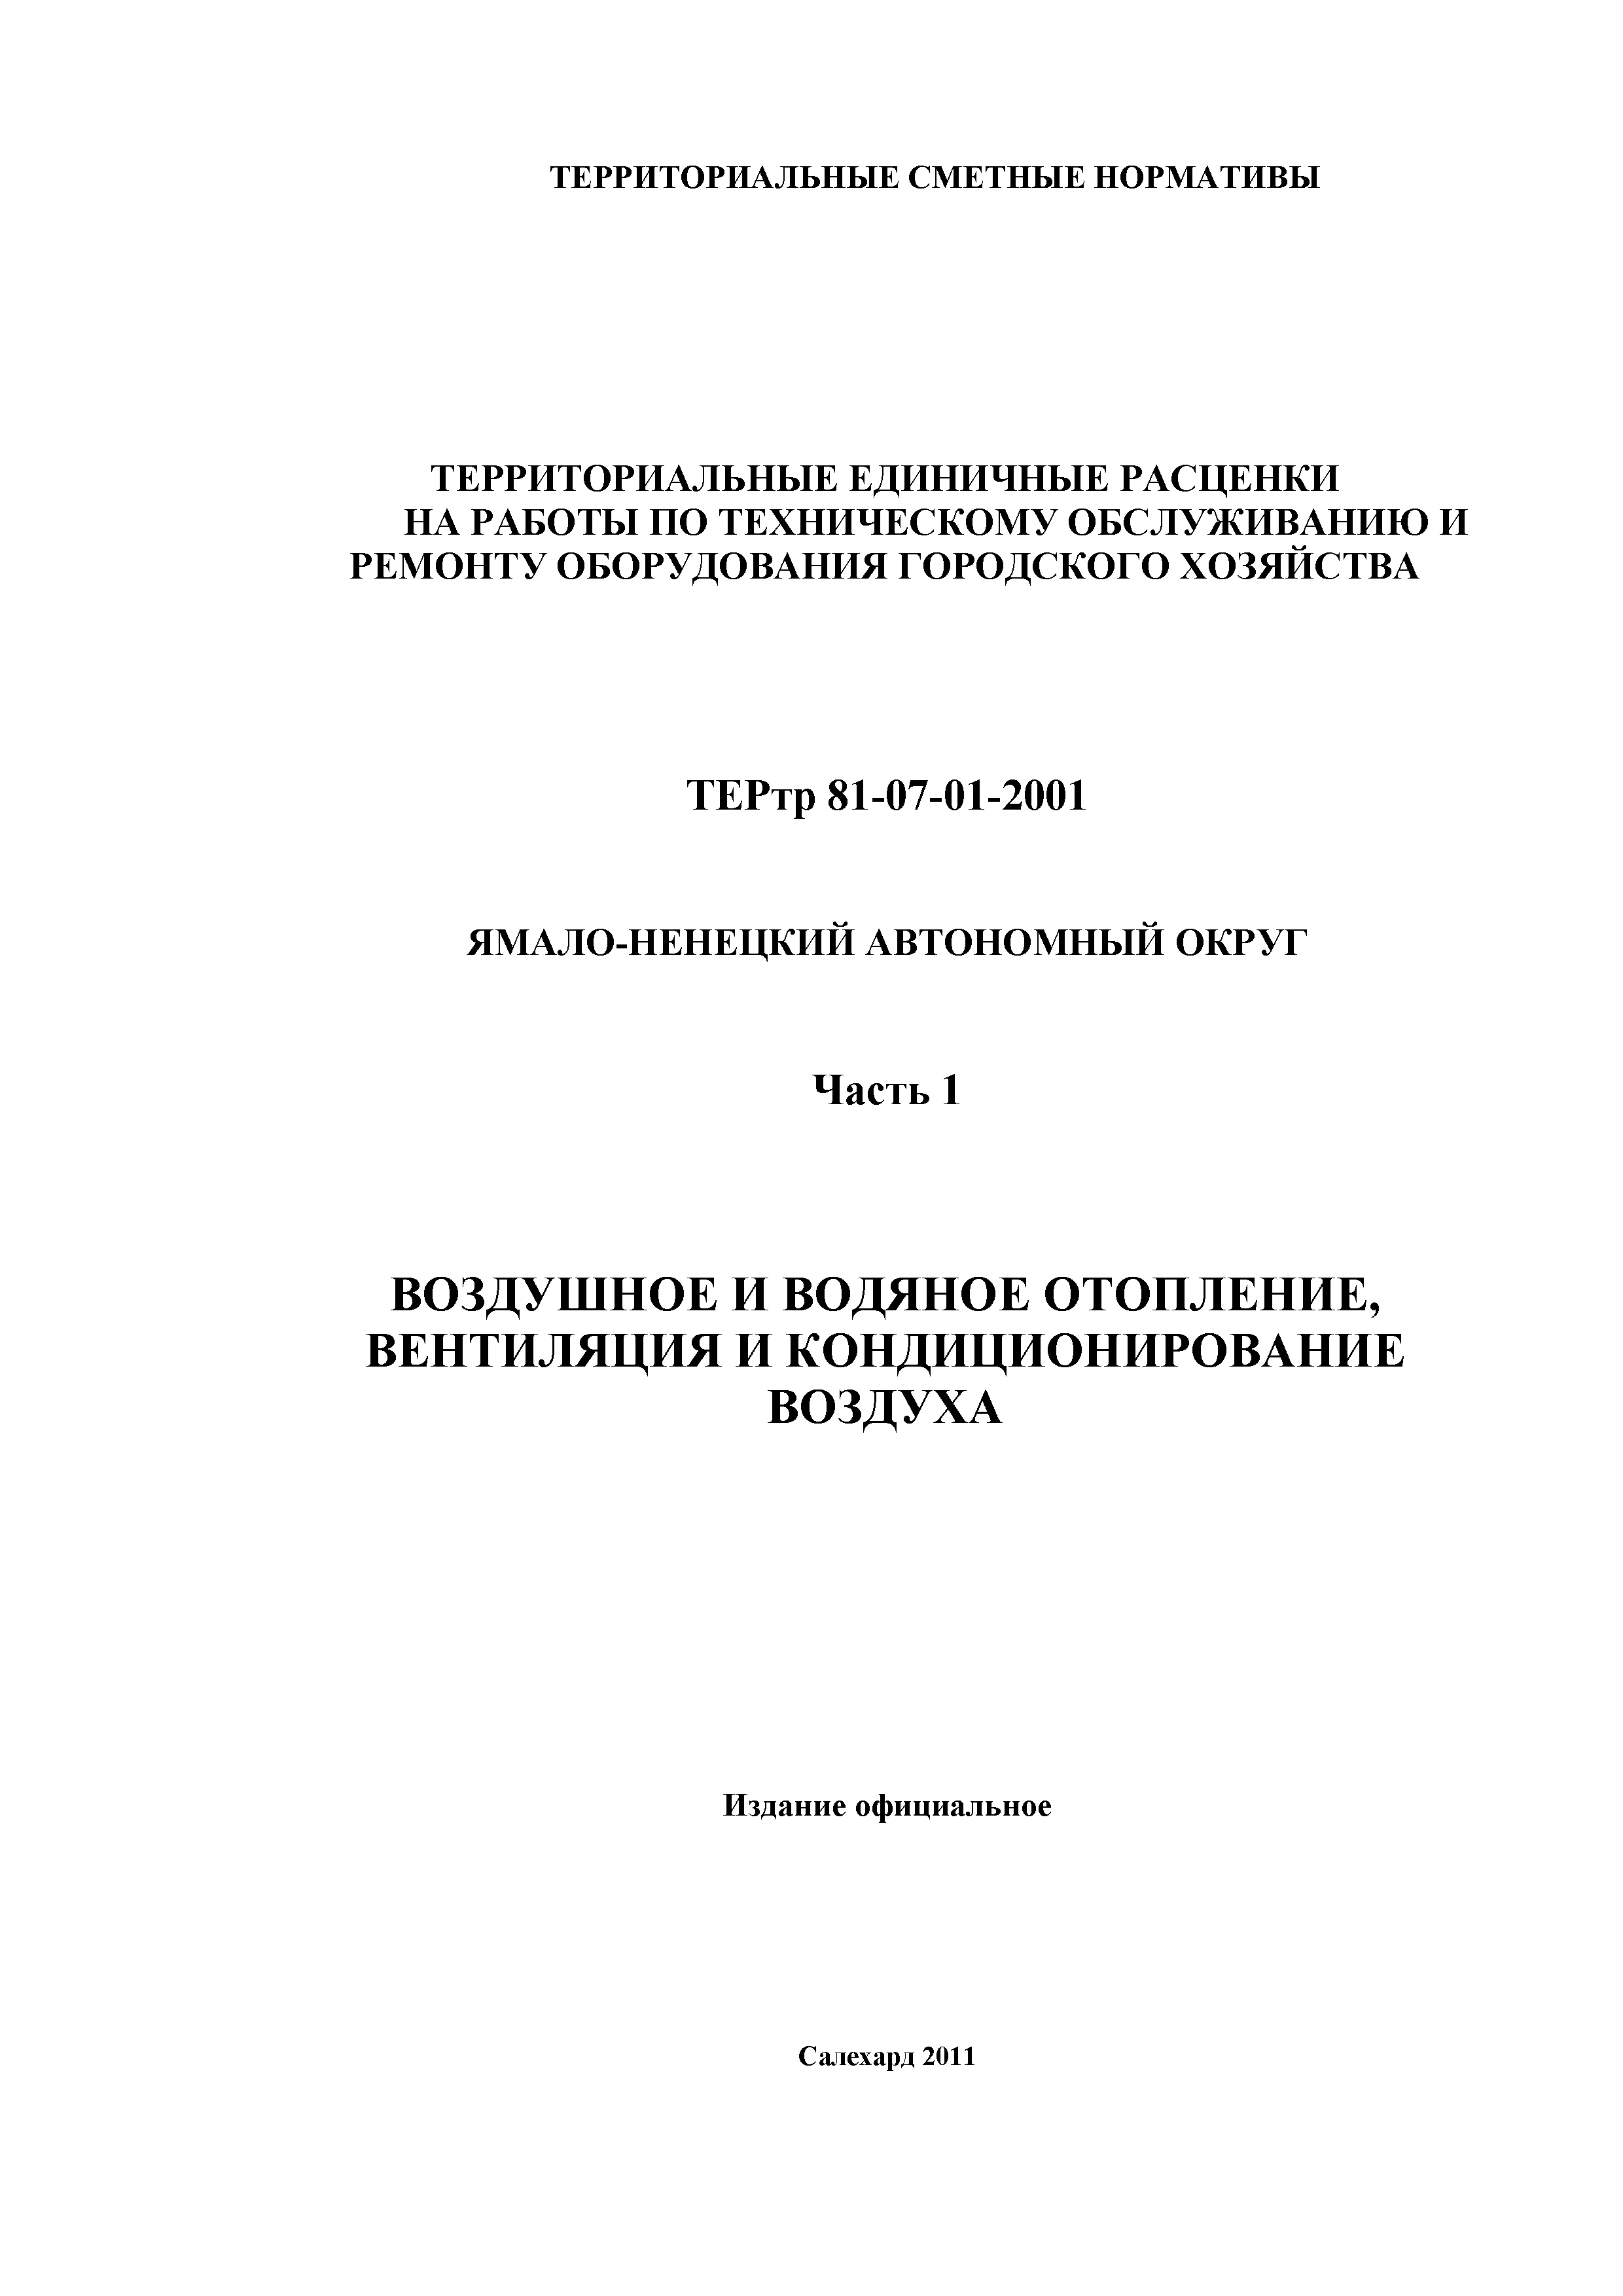 ТЕРтр Ямало-Ненецкий автономный округ 01-2001